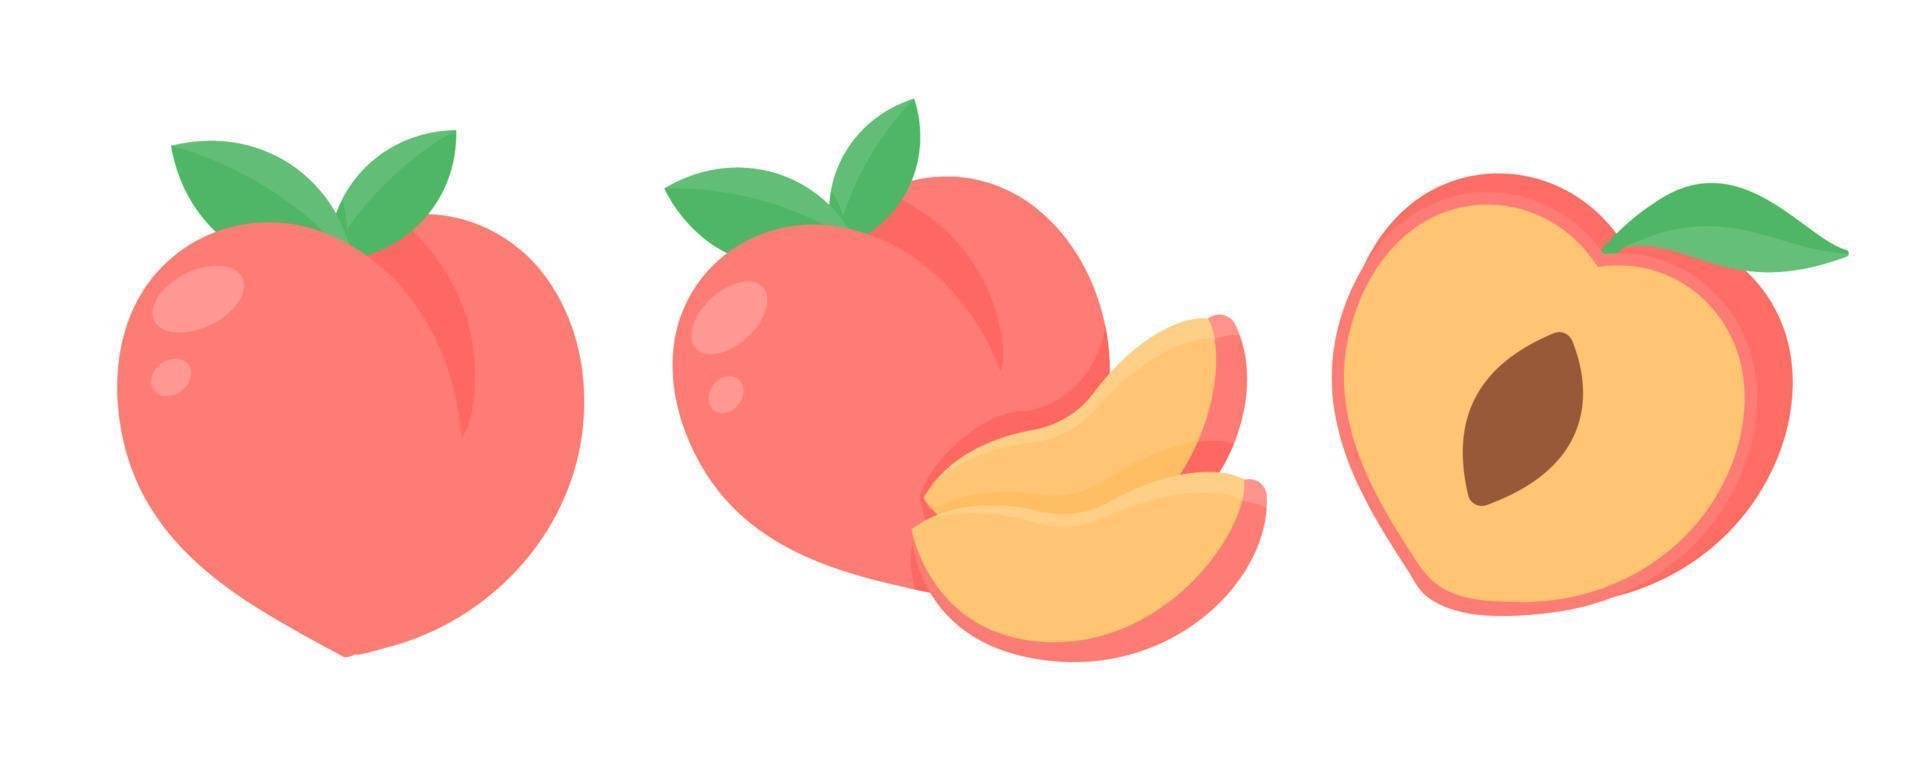 Pfirsich-Vektor. Rosa, herzförmiger Pfirsich, gesunde süße Frucht vektor